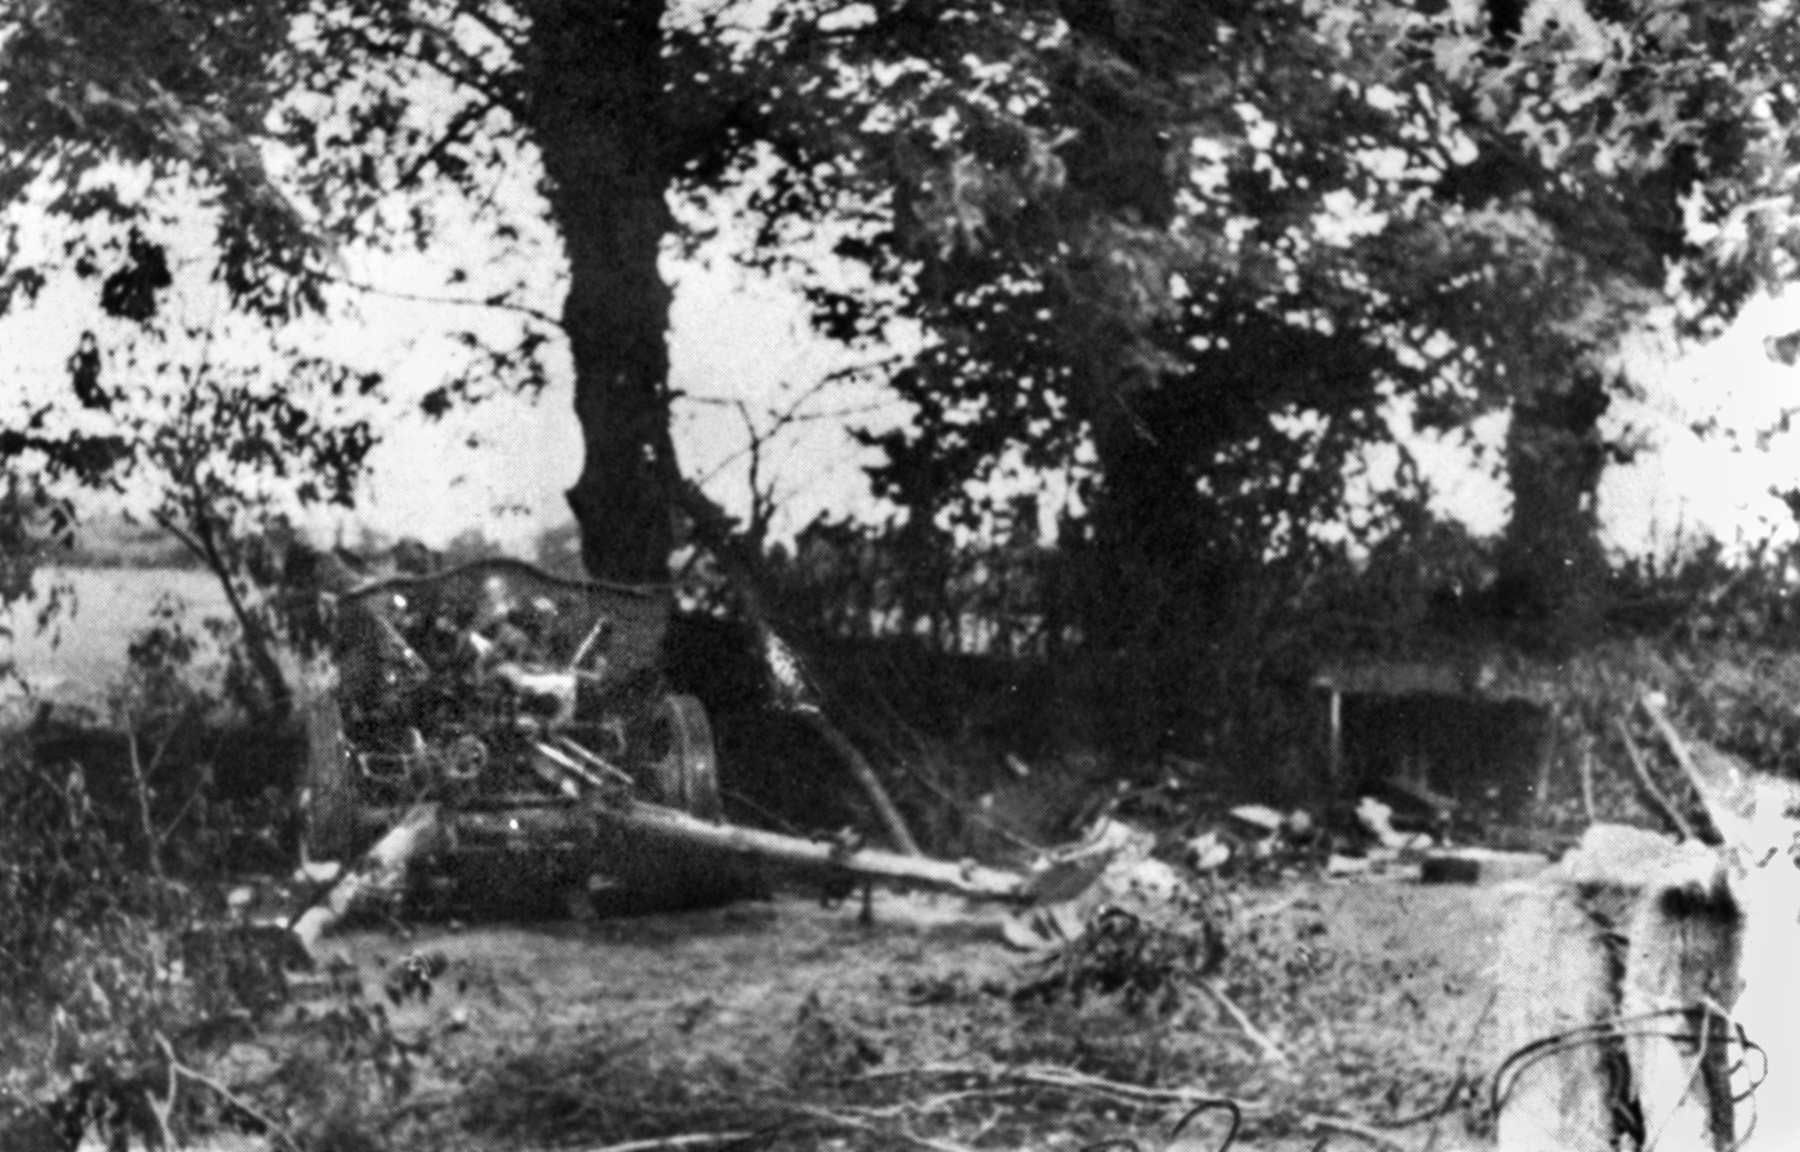 被简易连击毁的德国火炮之一。马拉基在那里为了找回一把德国鲁格手枪差点丧命。